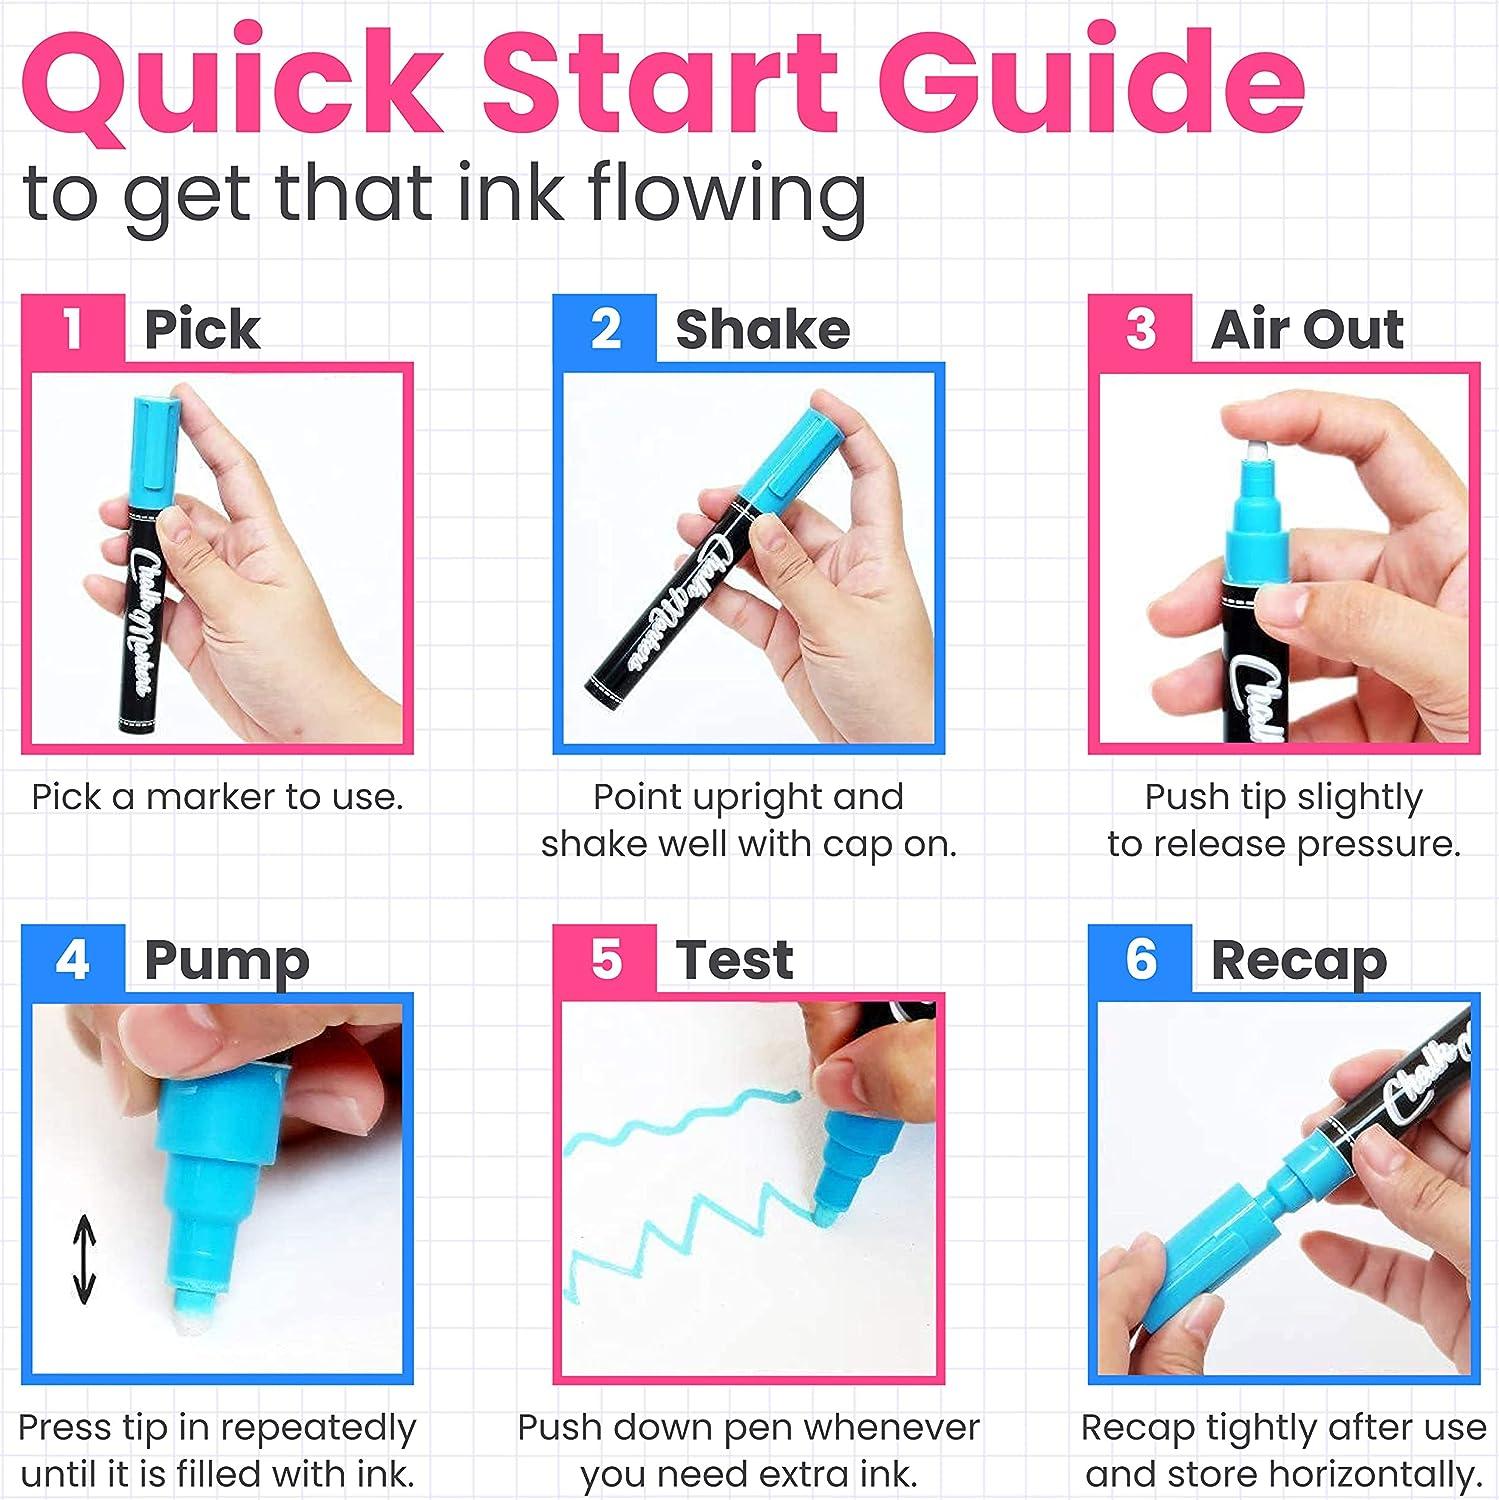 Easy Finger Painting Idea for Beginners - Chalkola - Chalkola Art Supply